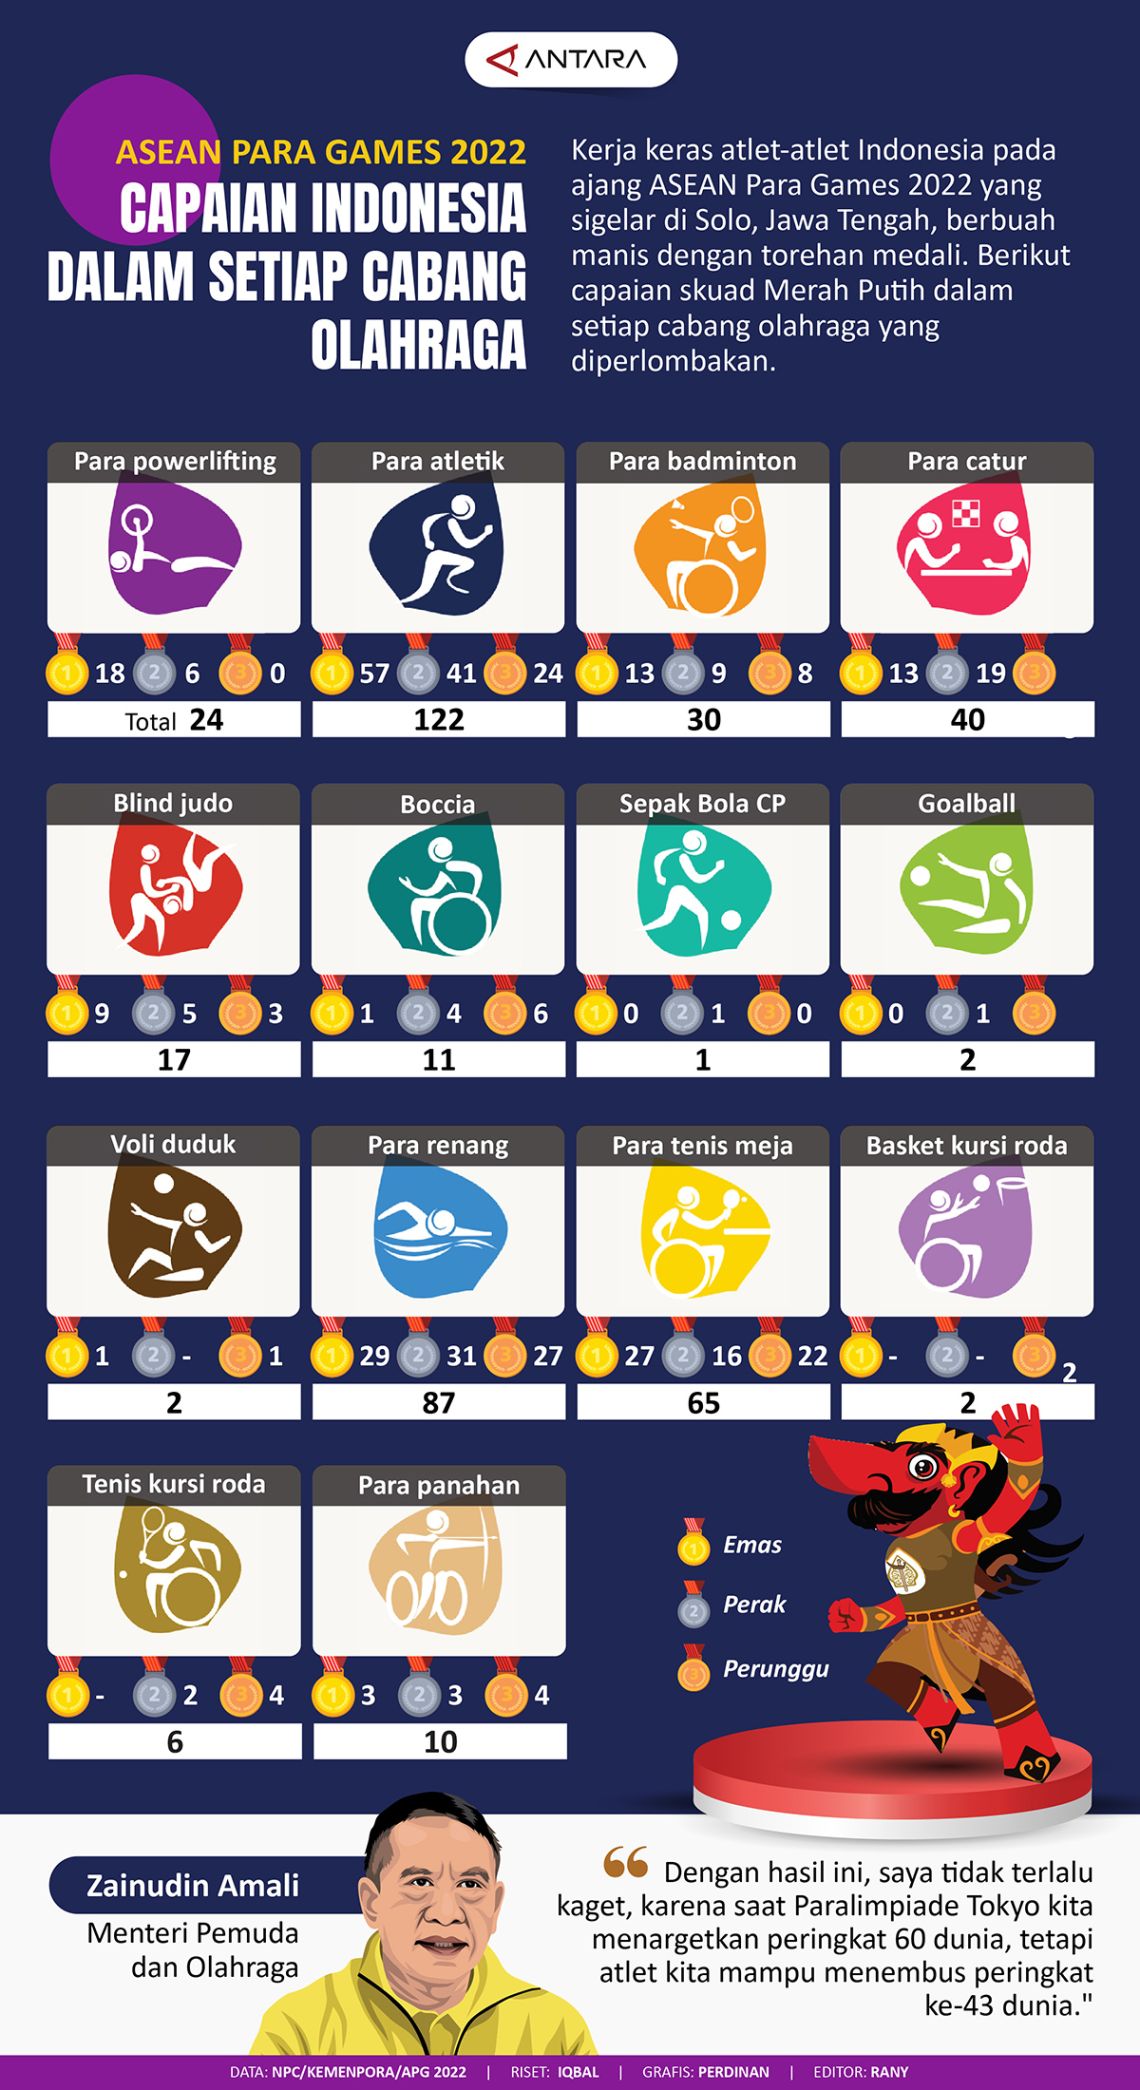 ASEAN Para Games 2022 Capaian Indonesia dalam setiap cabang olahraga